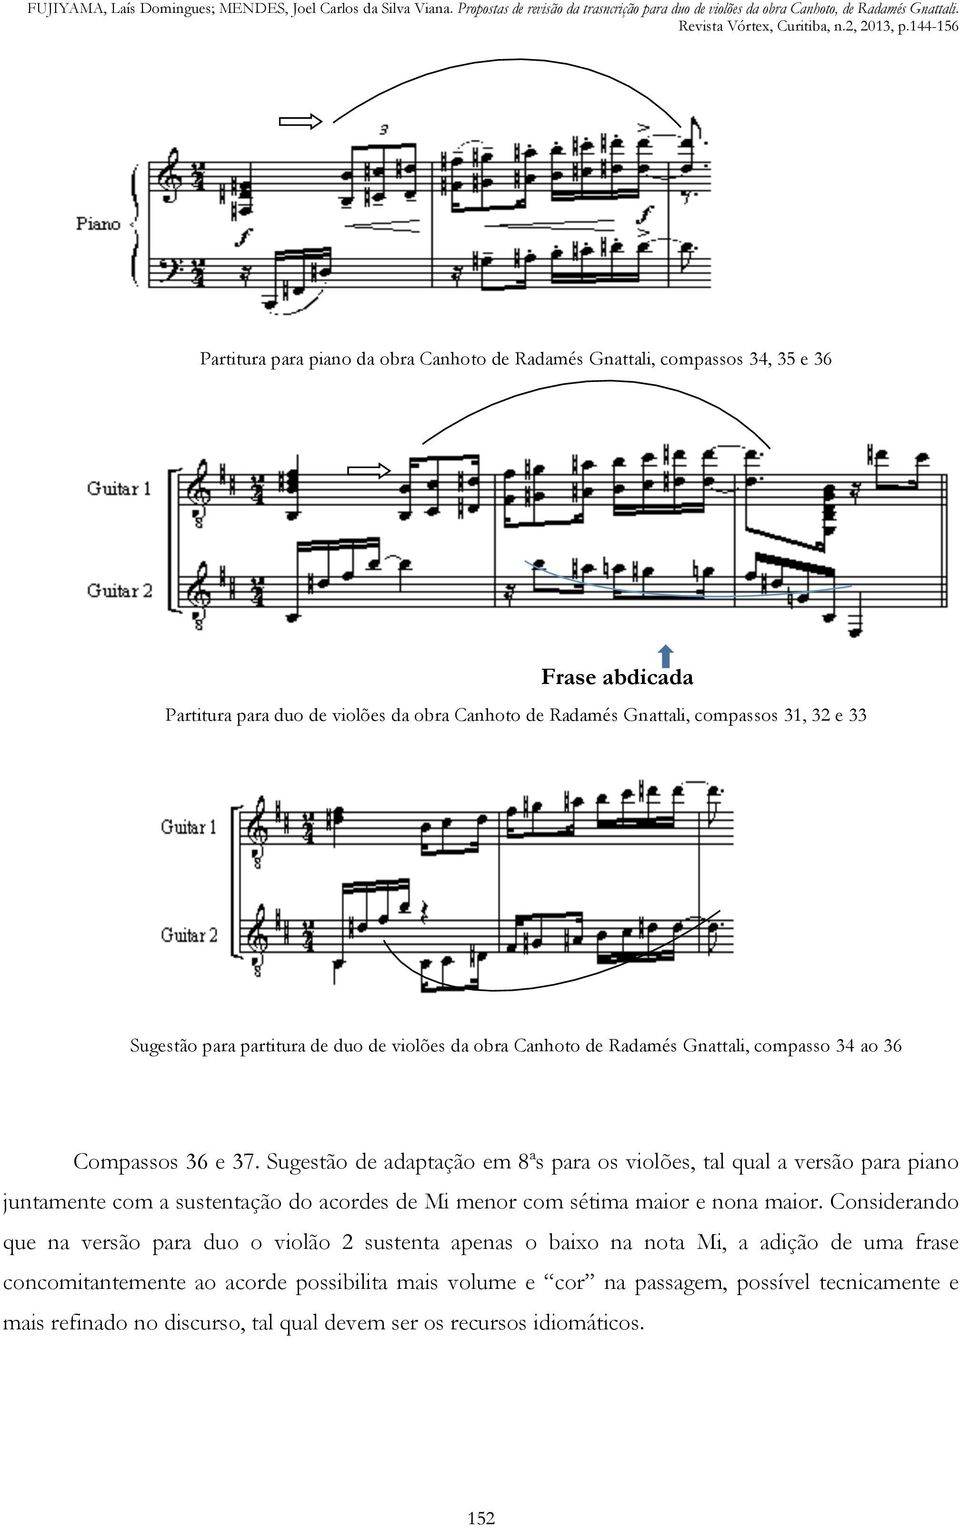 Sugestão de adaptação em 8ªs para os violões, tal qual a versão para piano juntamente com a sustentação do acordes de Mi menor com sétima maior e nona maior.